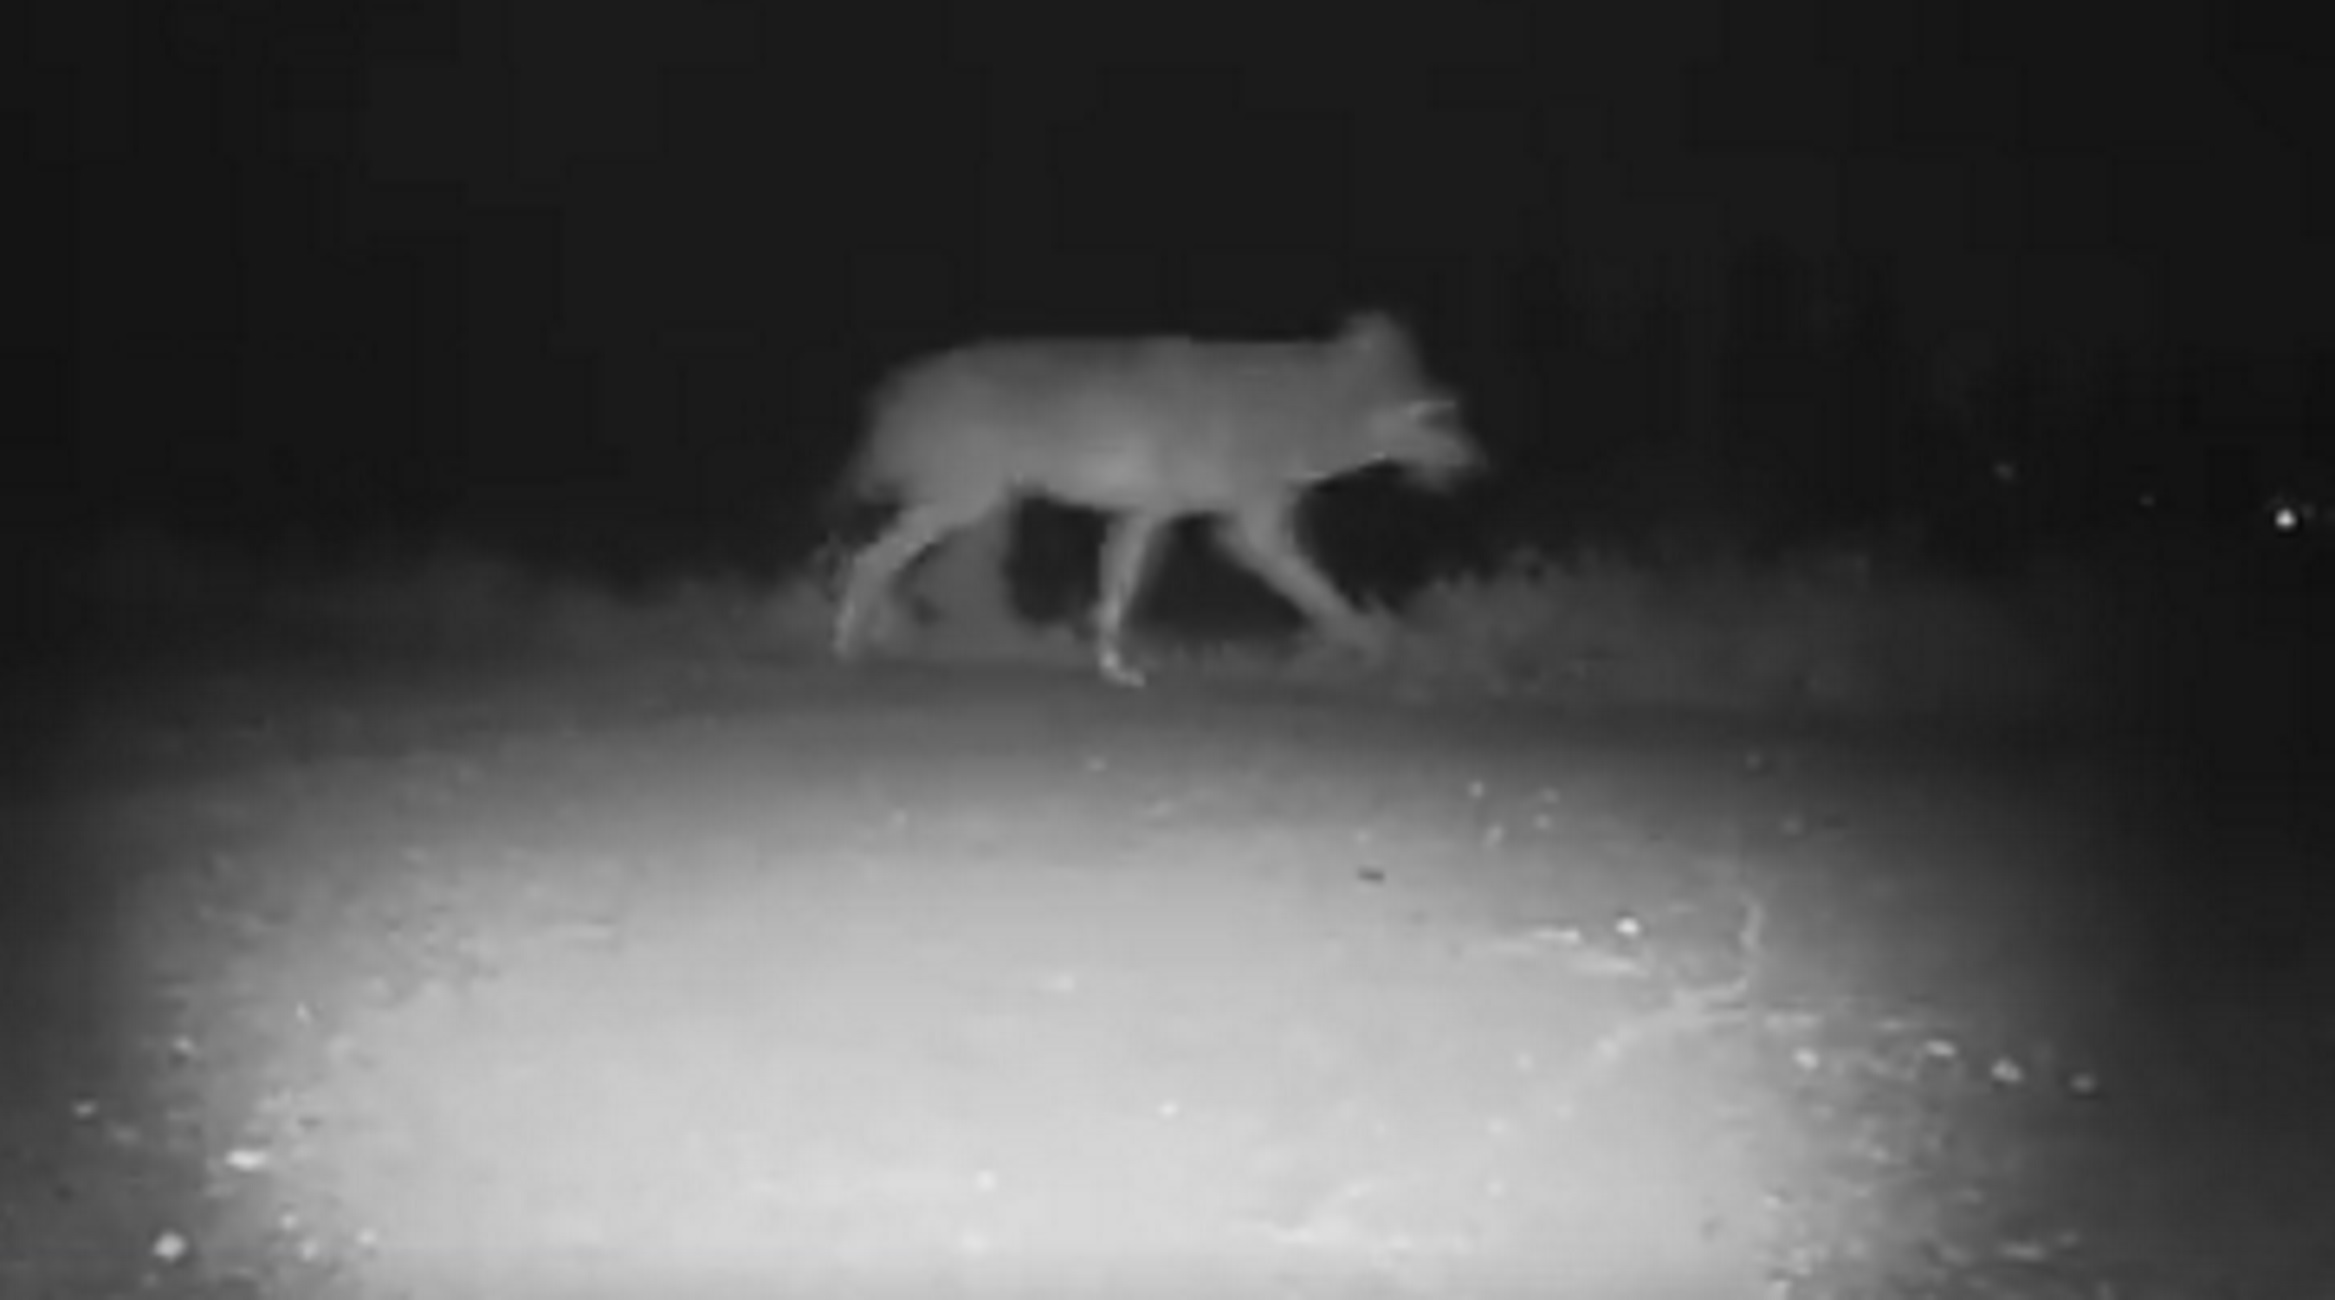 Σέρρες: Η στιγμή που λύκος περνάει έξω από νηπιαγωγείο, δείτε το βίντεο